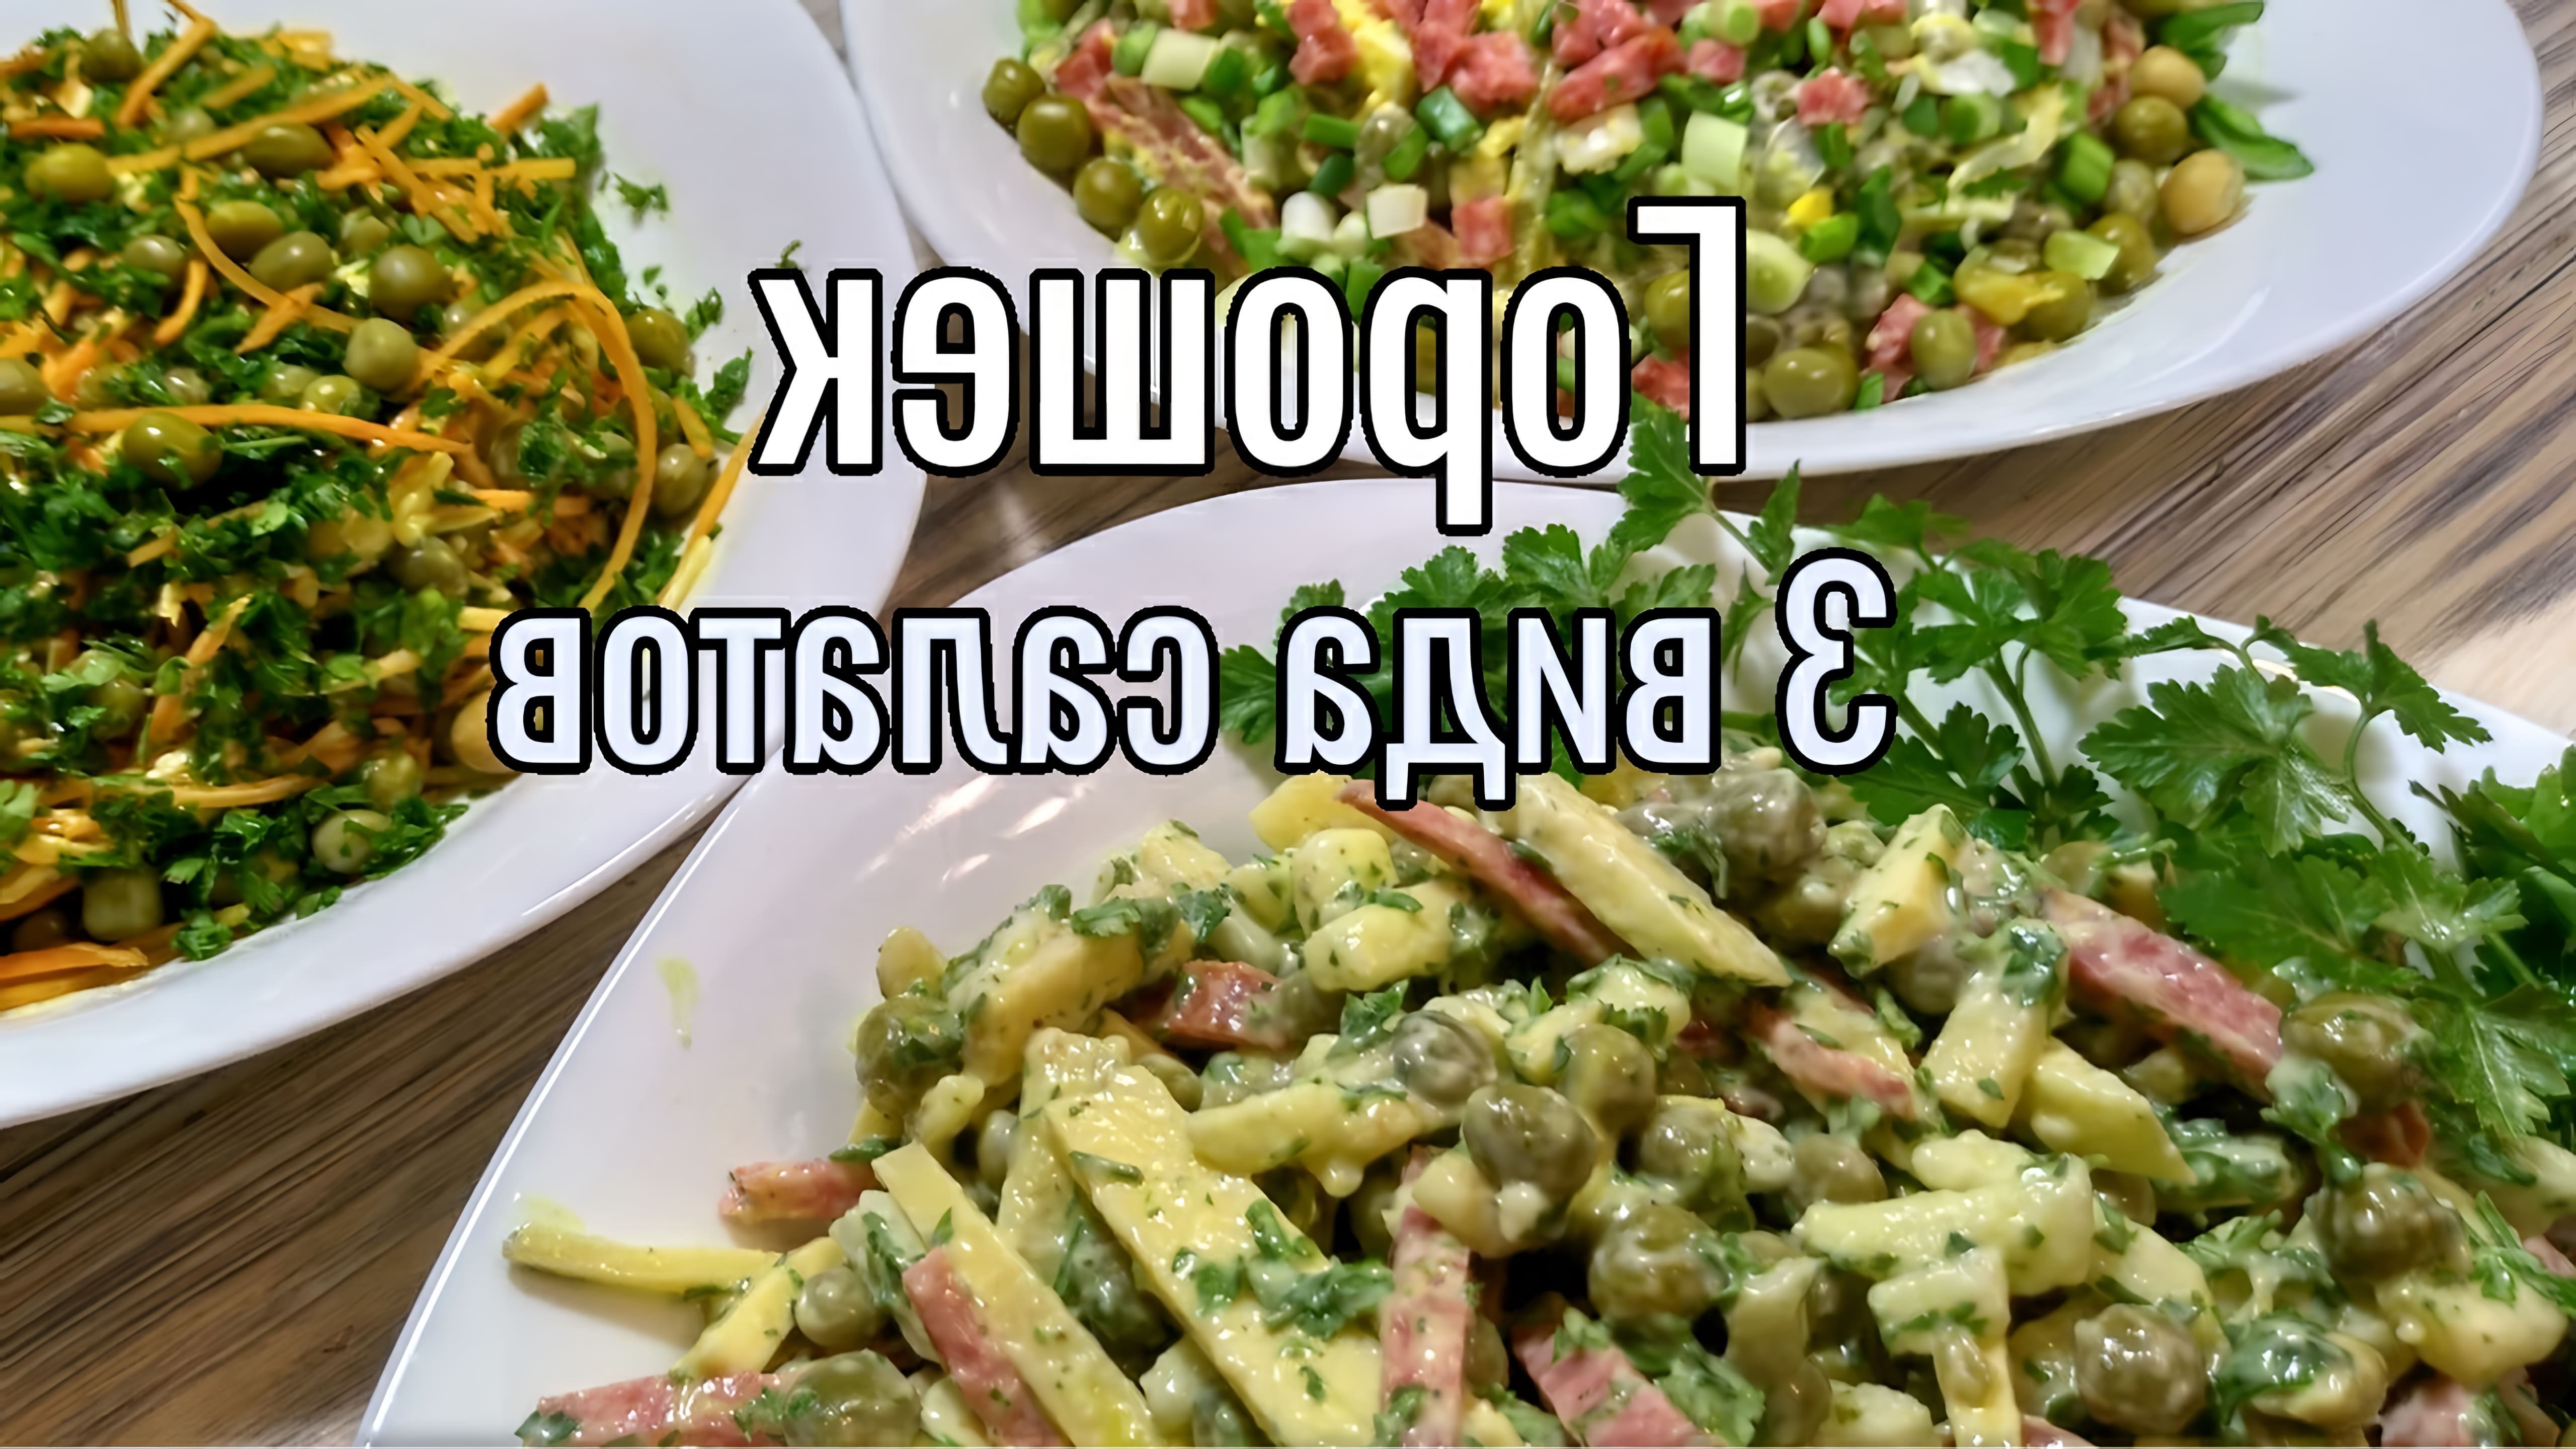 В этом видео демонстрируются три варианта салатов из консервированного горошка